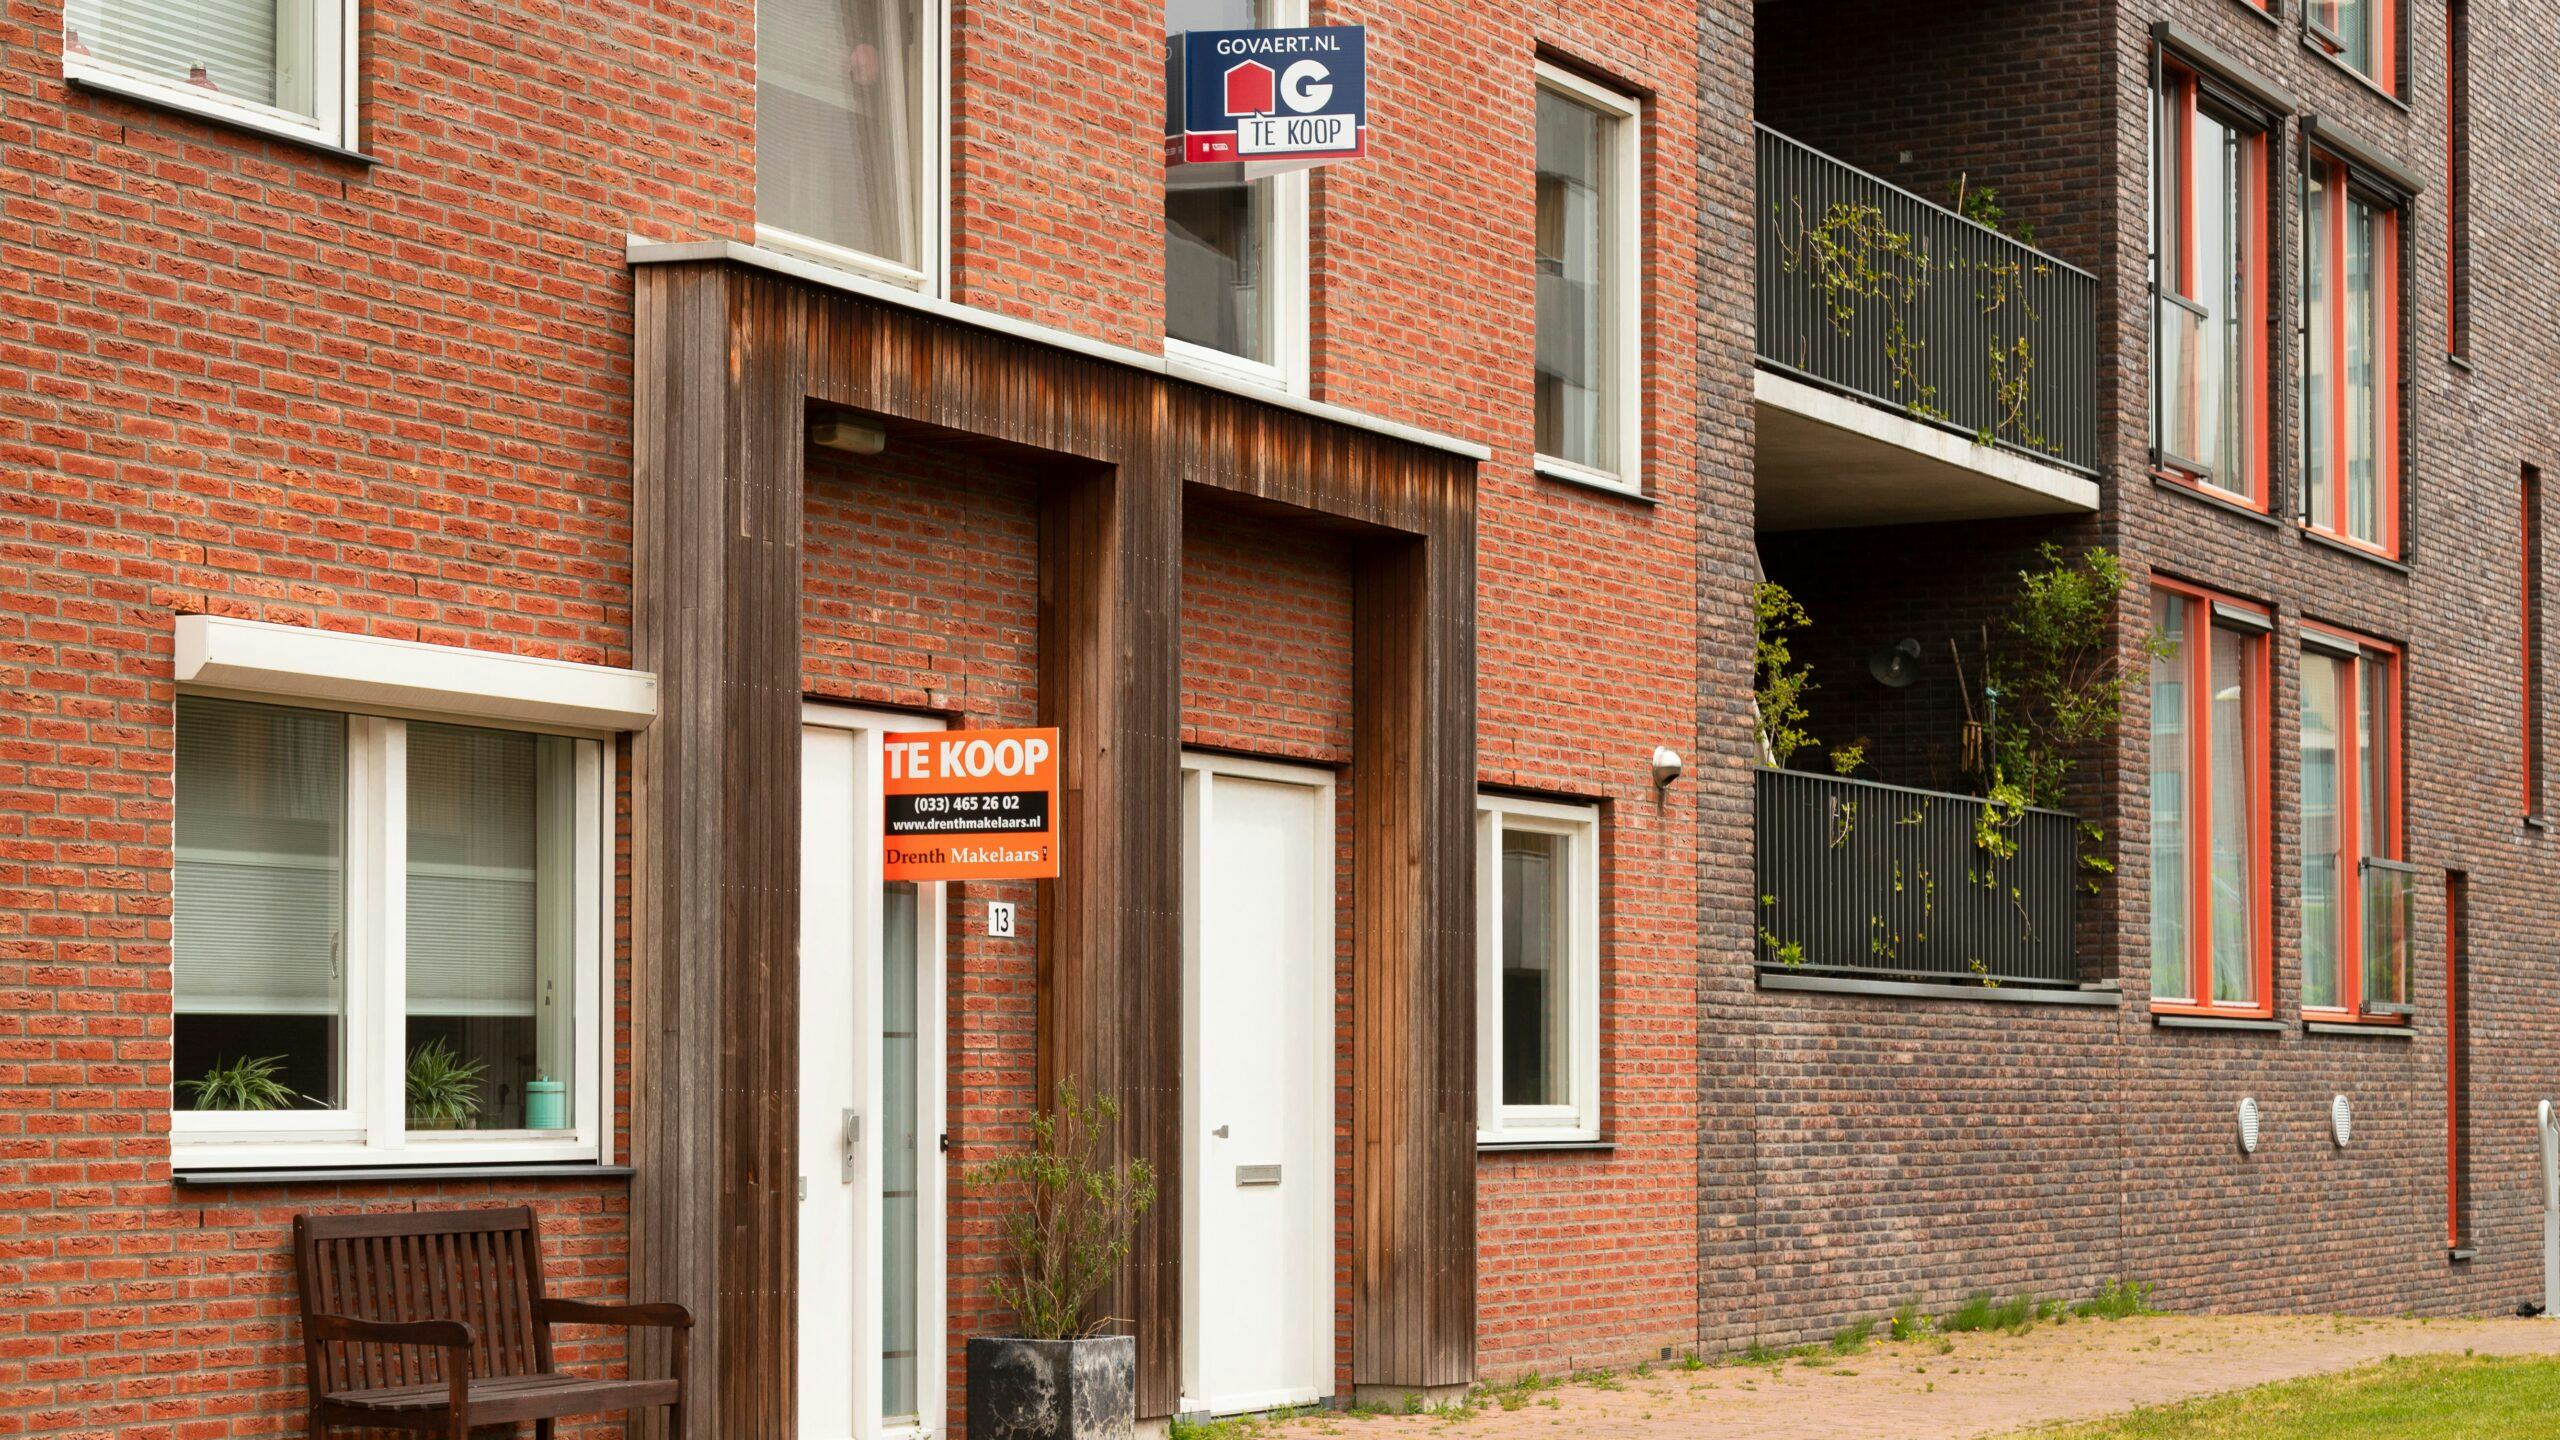 Huizenprijzen in Nederland en Duitsland krijgen hardste klappen